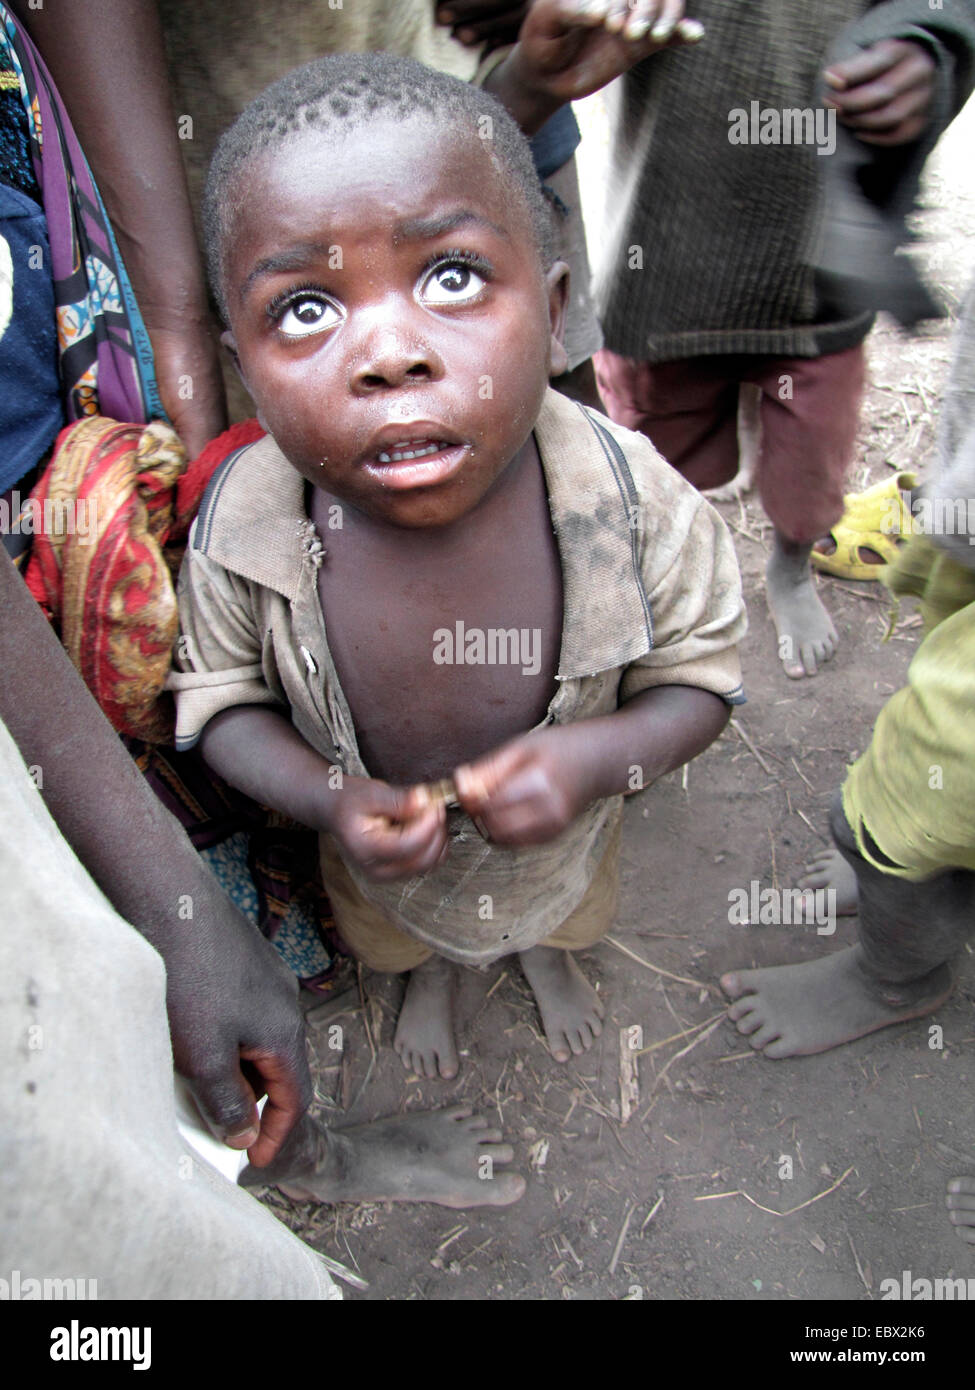 Little Boy in un gruppo di membri della minoranza dei Batwa vivono in un isolato area rurale, Burundi Bujumbura rurale, Mutimbuzi Foto Stock